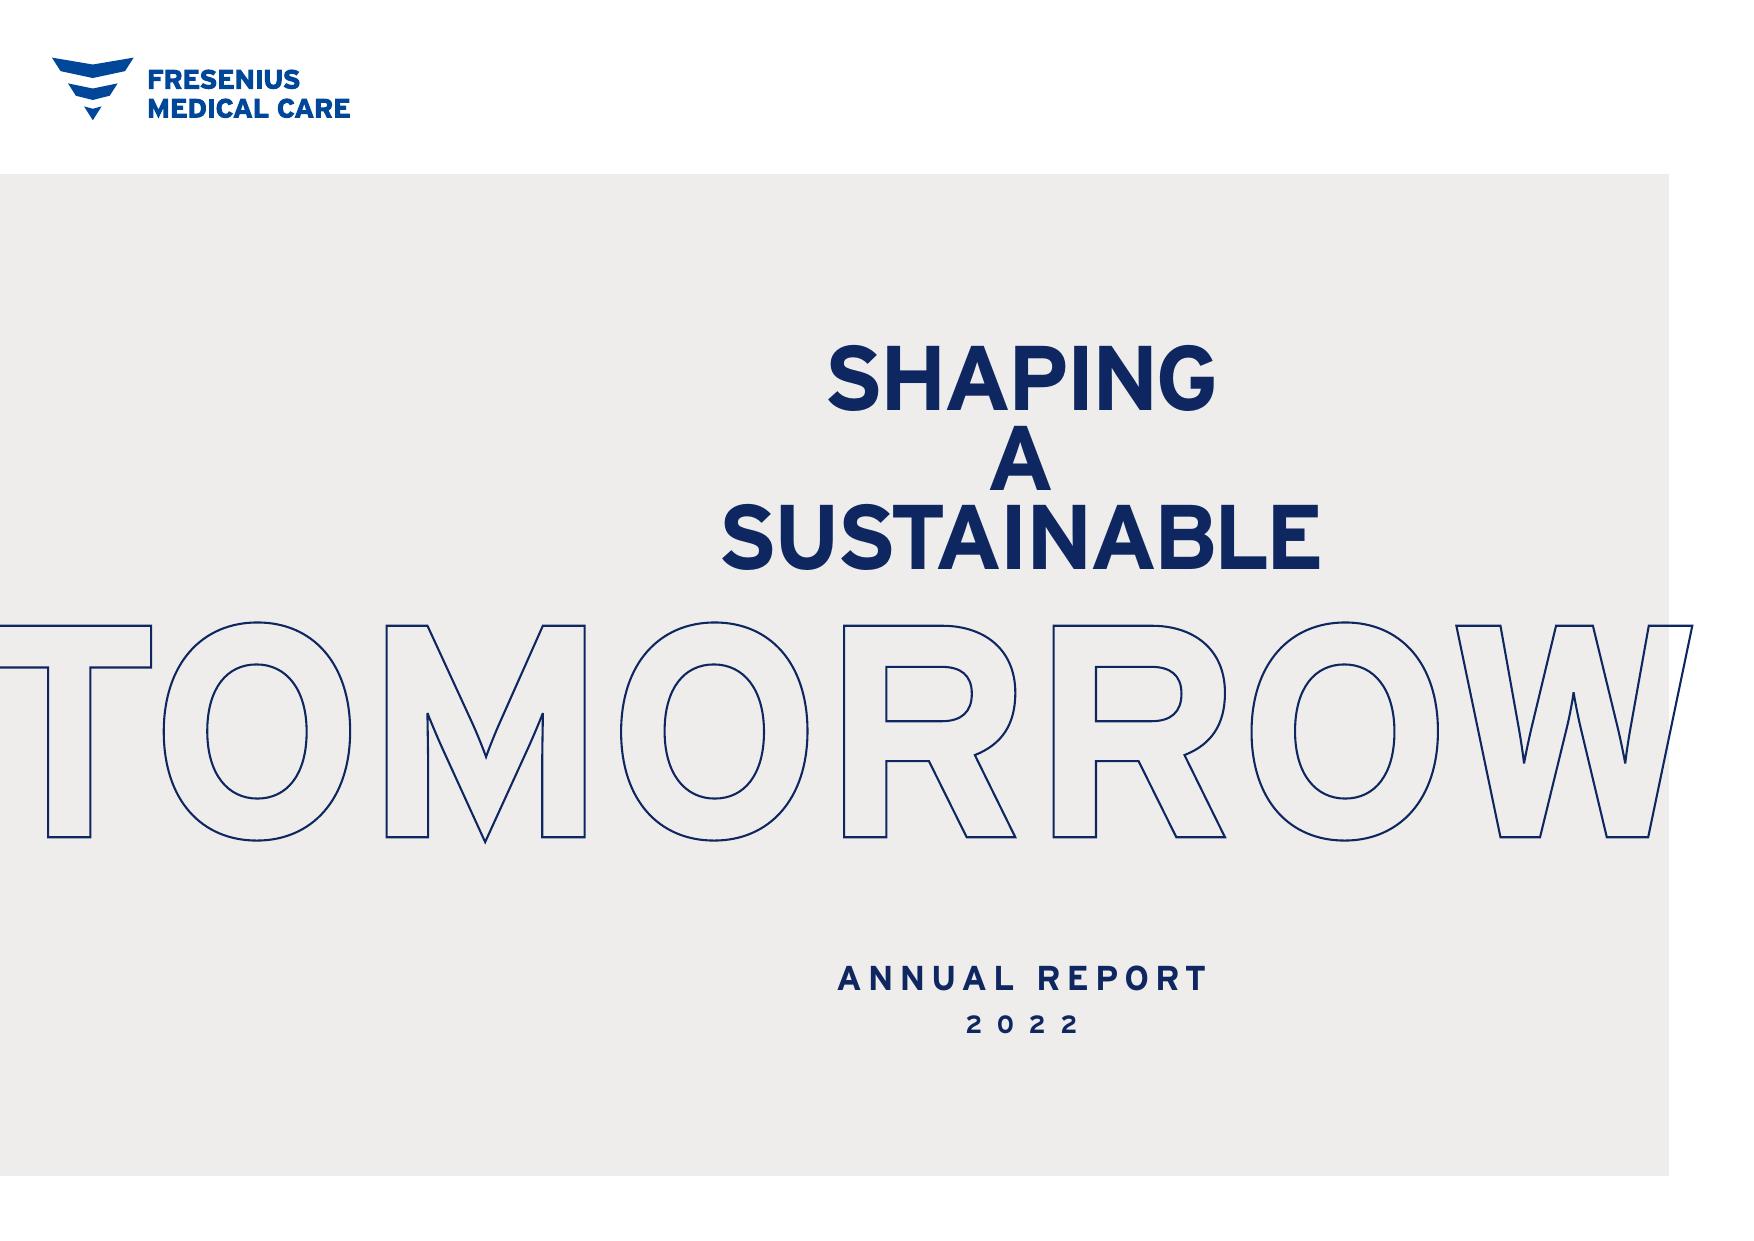 LGMA 2022 Annual Report